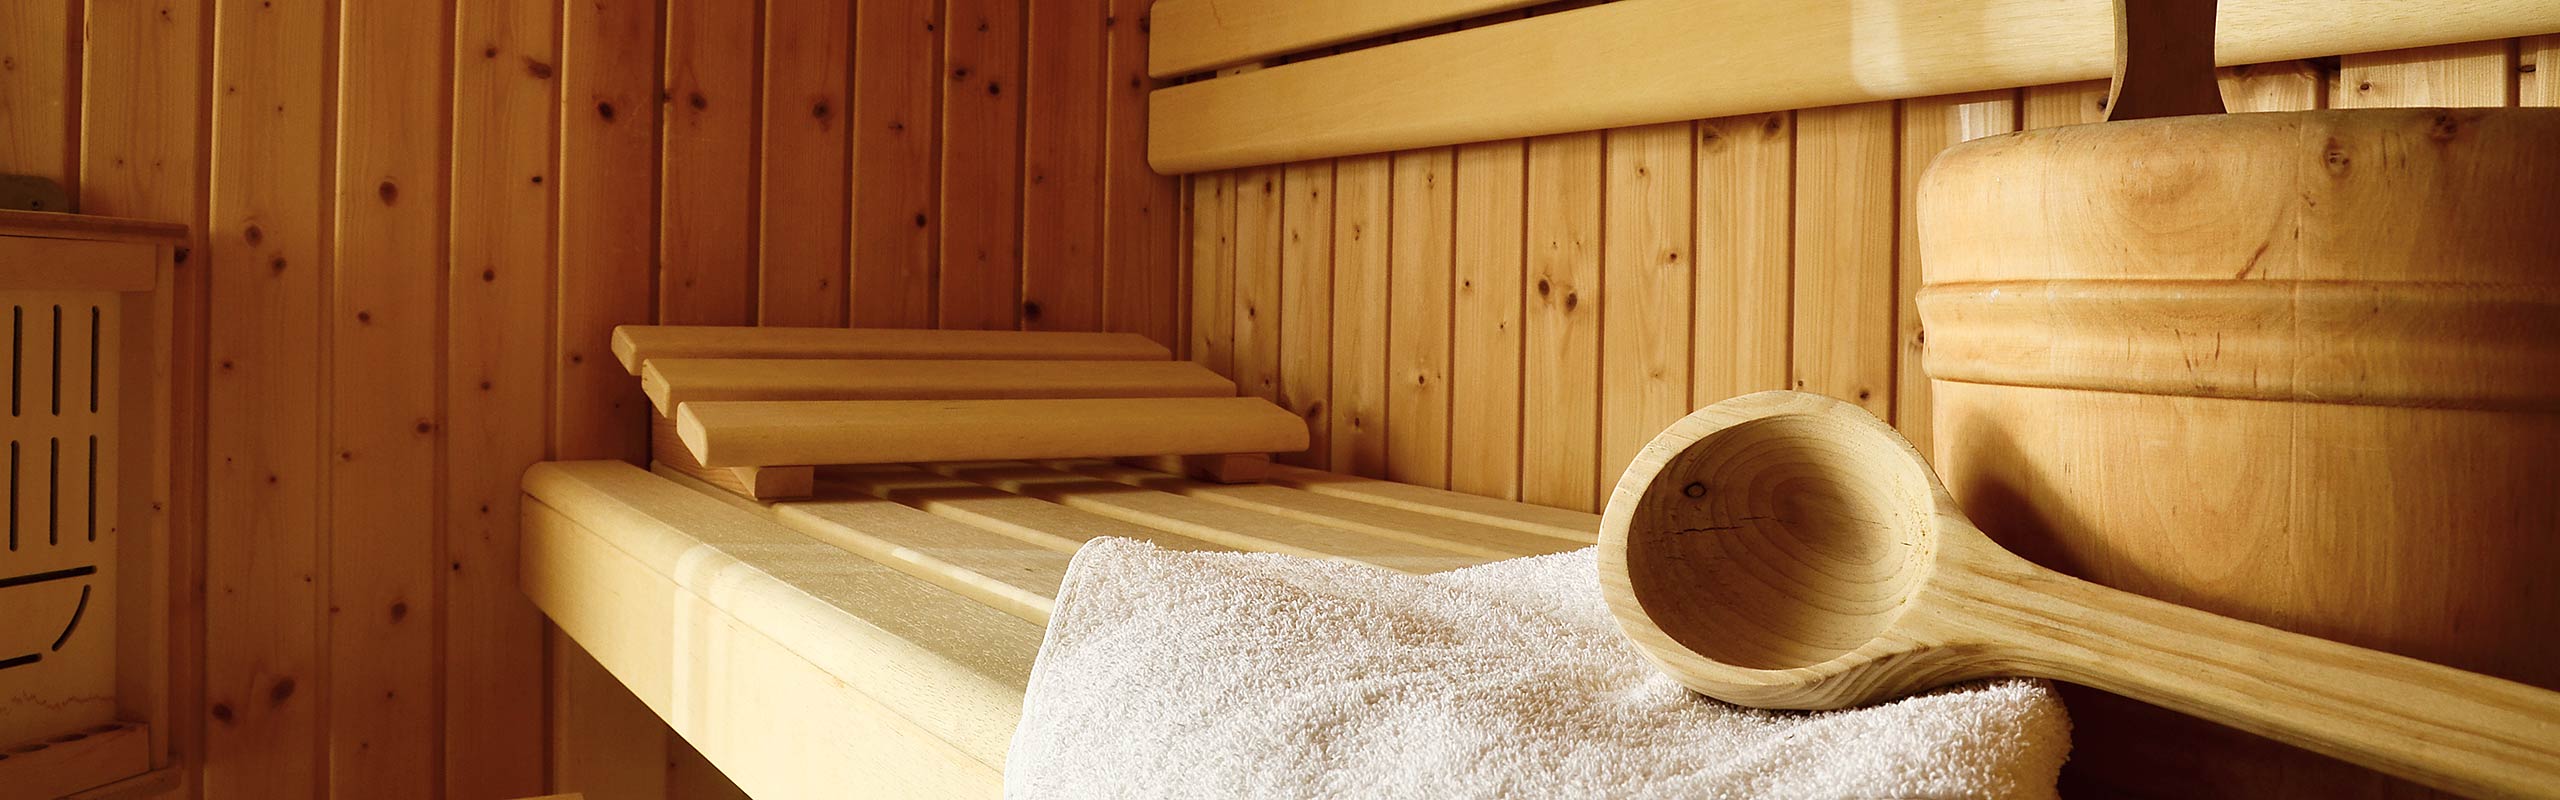 Sauna im Landhaus am Rosenbächle in Pfronten im Allgäu